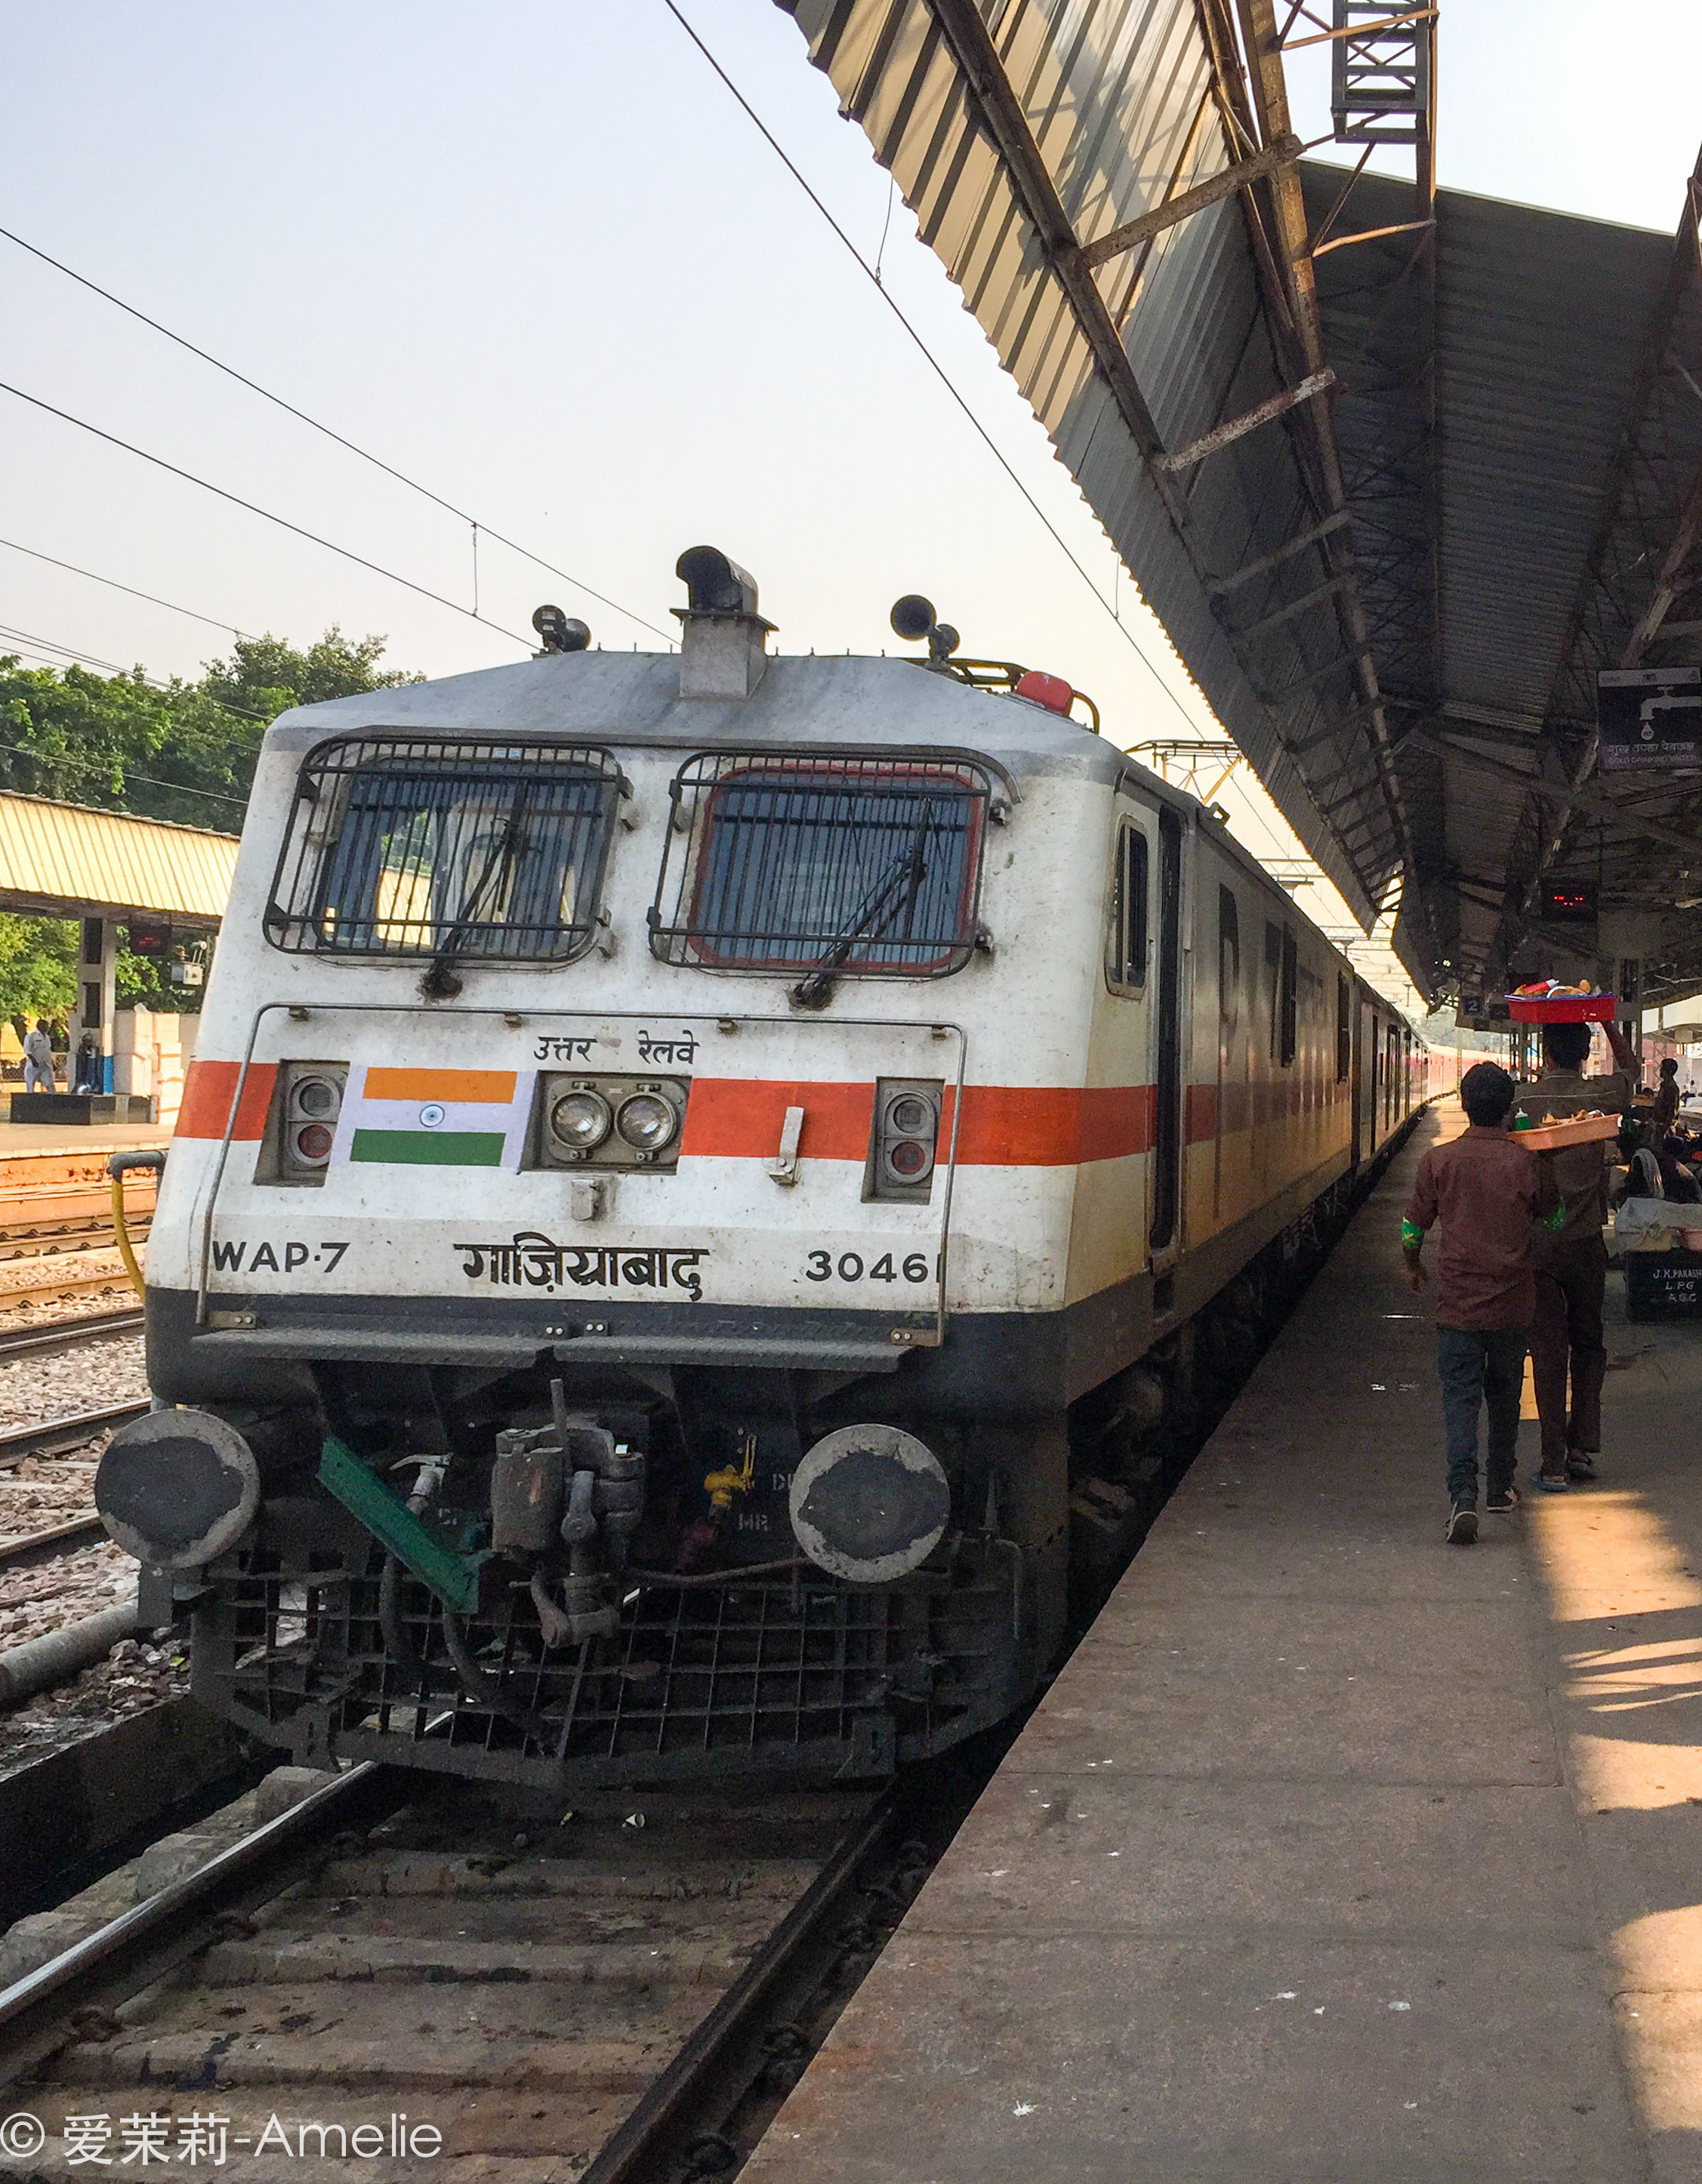 印度开挂式火车,它真实的样子竟是这样